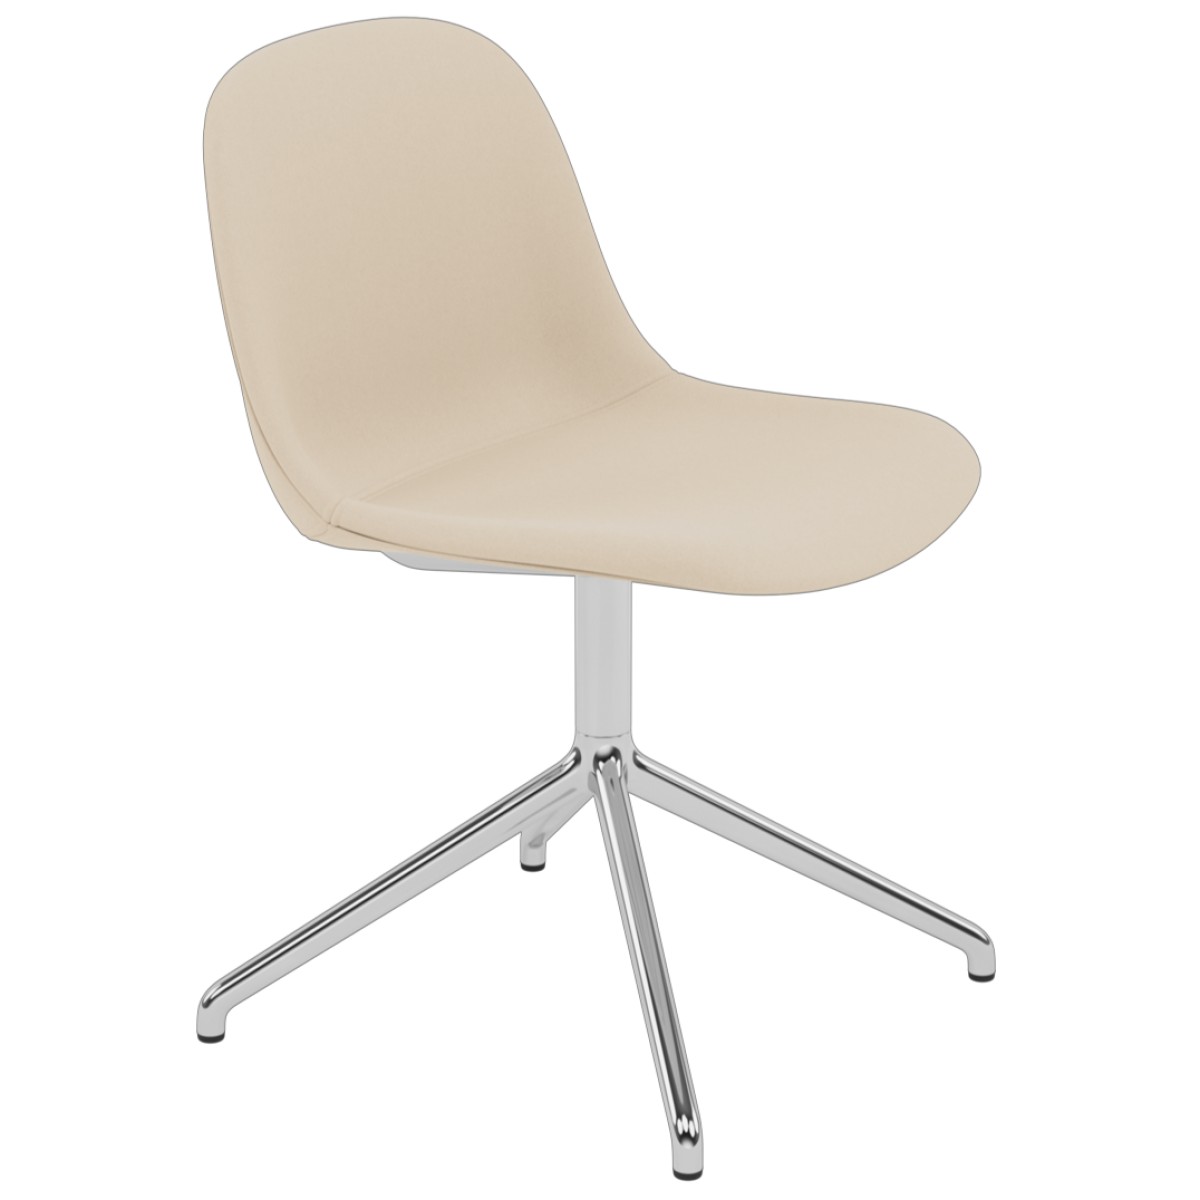 Fiber Side Chair / Swivel Base with Return (Full Upholstery)